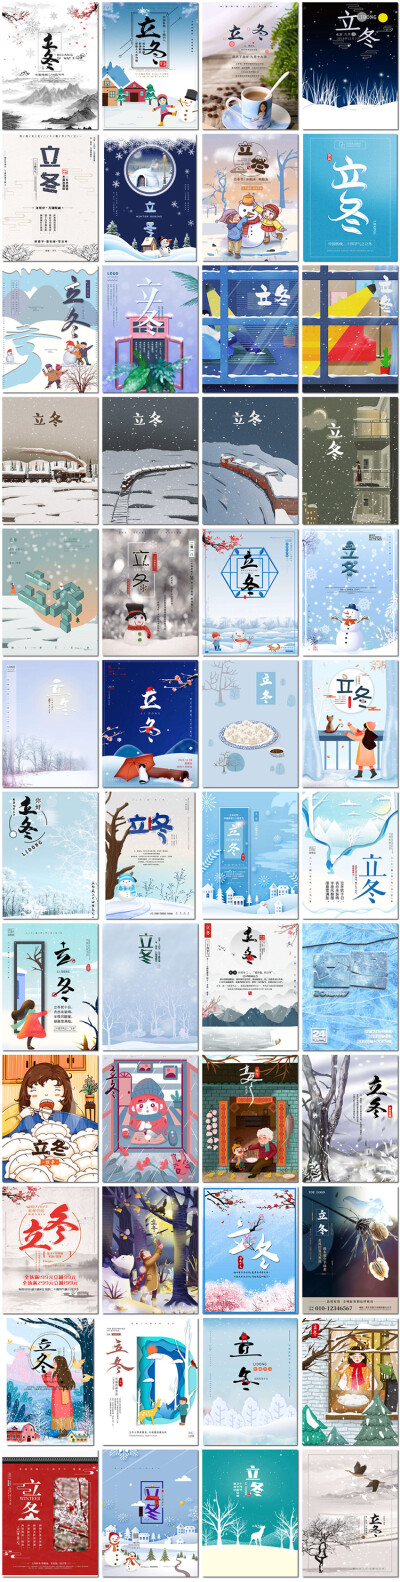 立冬节气24二十四节气11月冬天你好励志插画海报PSD设计模版素材